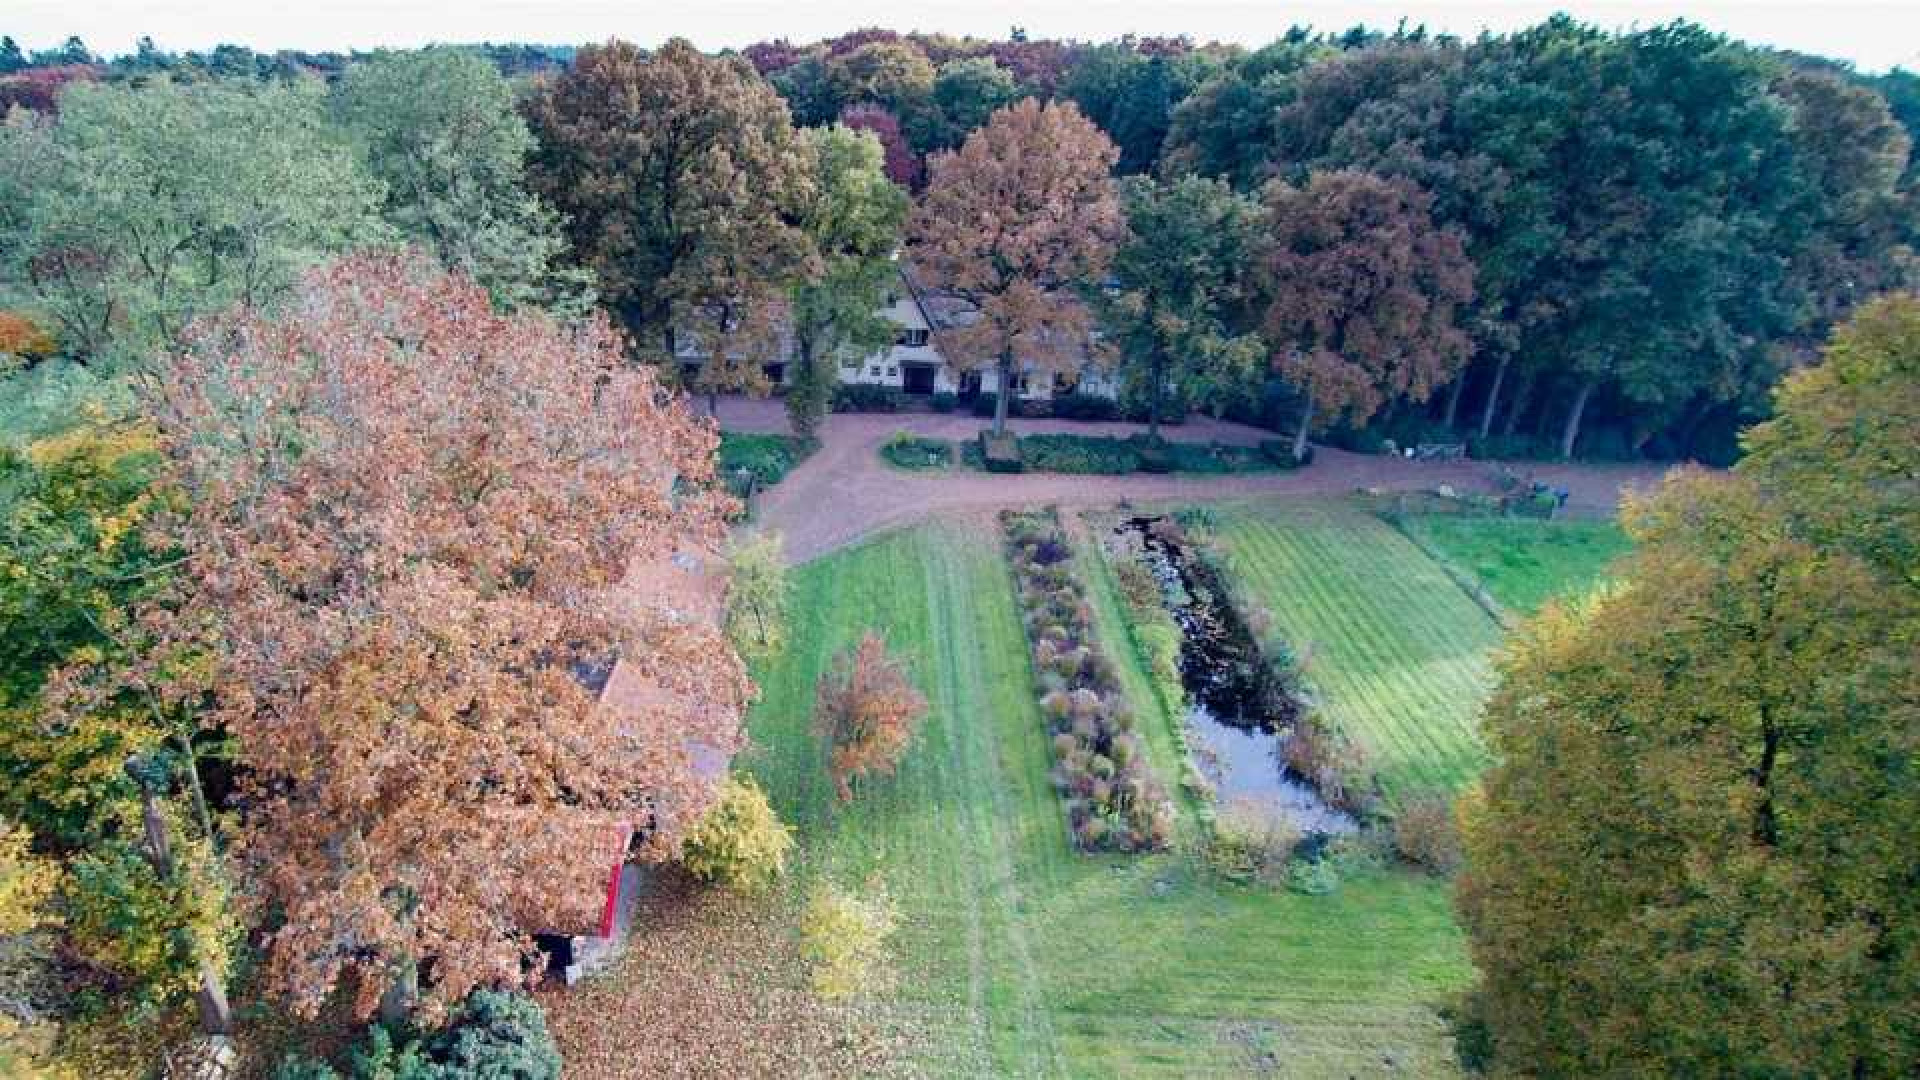 Oud PvdA topman Marcel van Dam haalt zijn landhuis uit de verkoop. Zie foto's 19